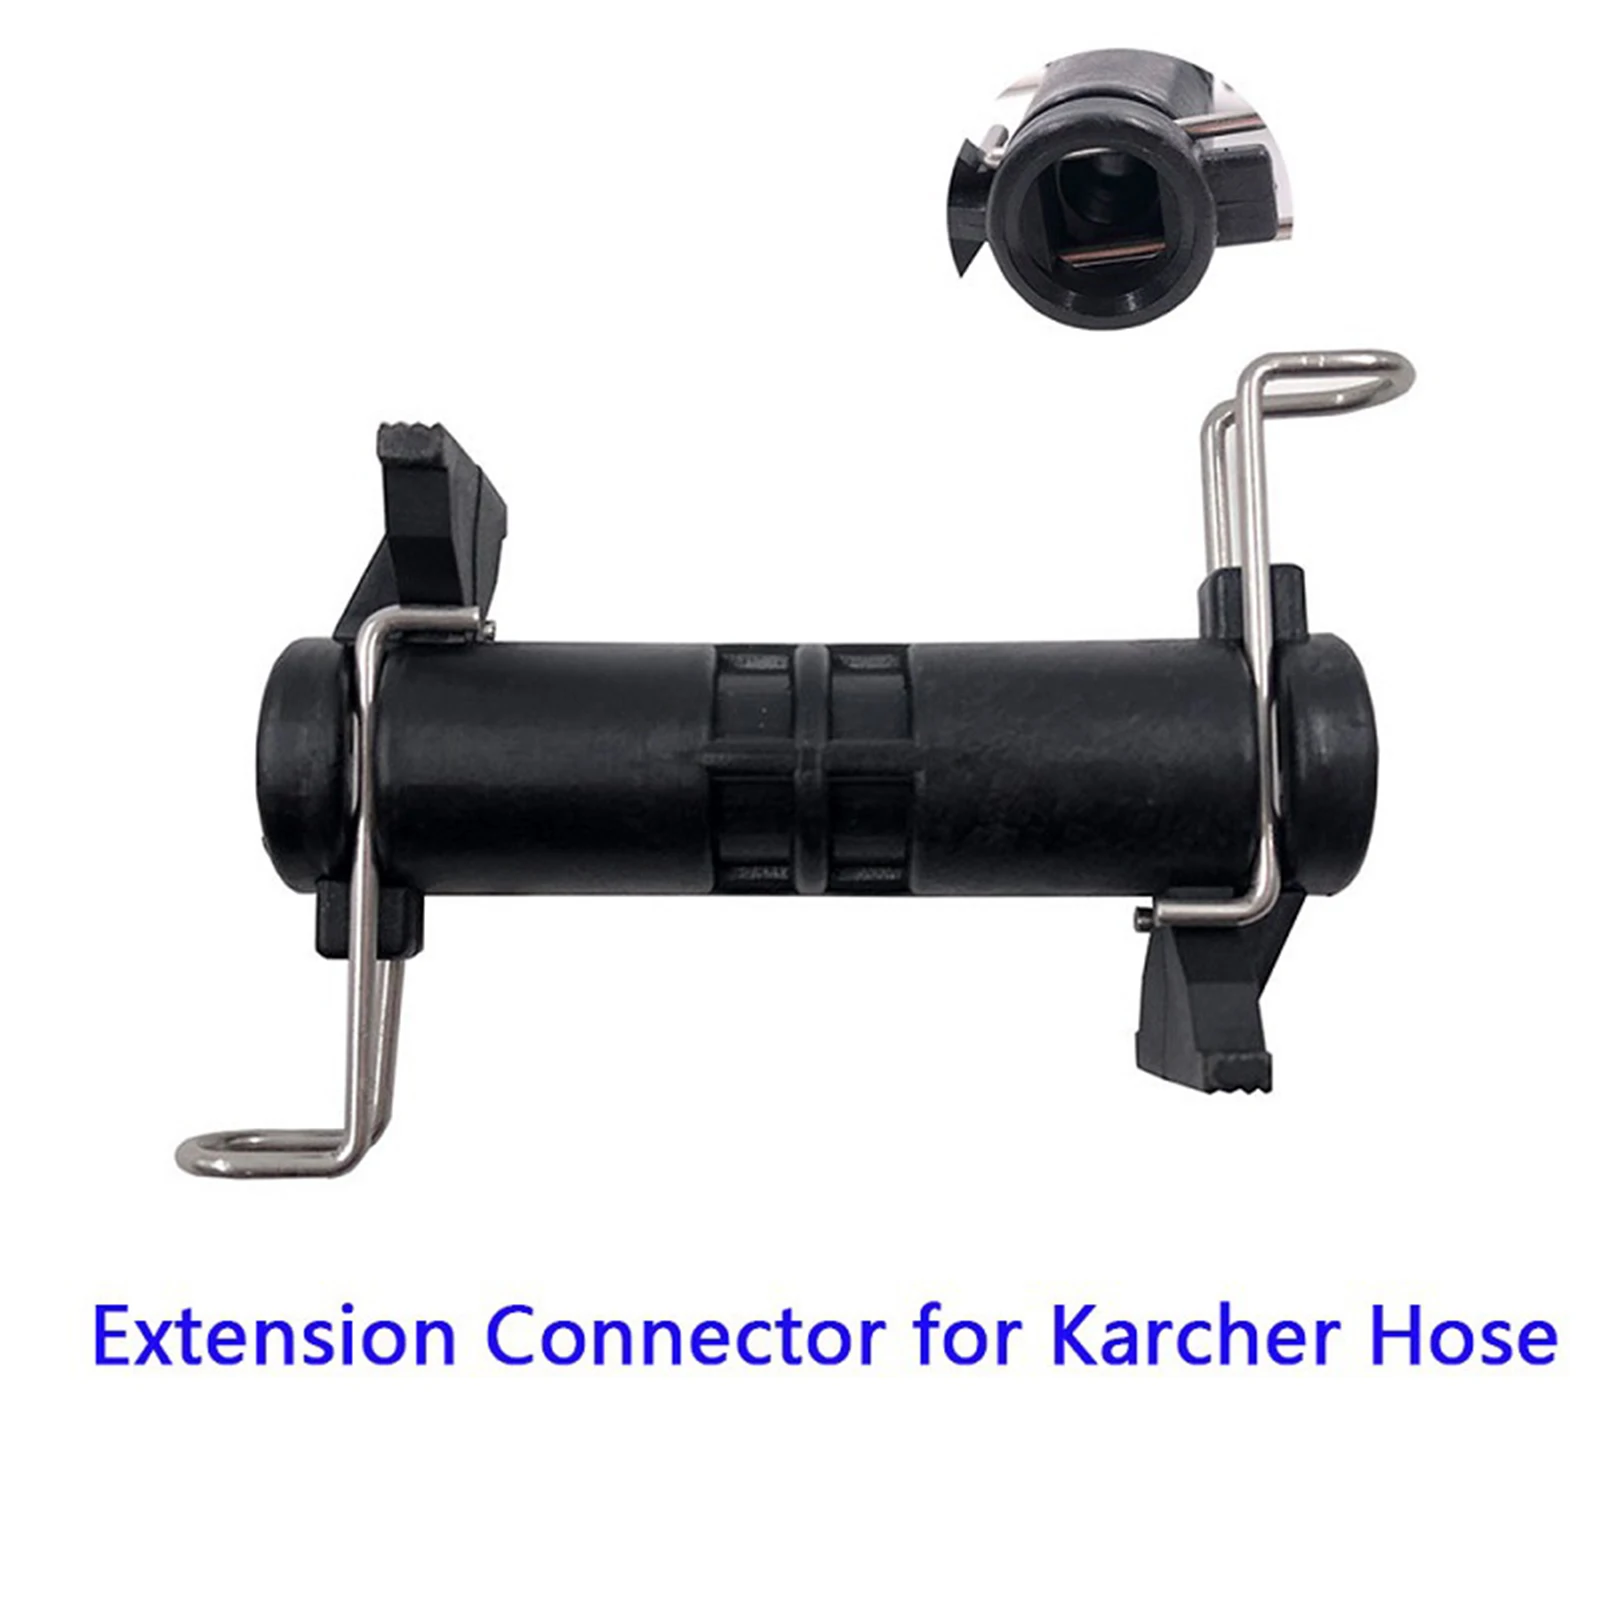 For Karcher K2 K3 K4 K5 K6 K7 Accessories Hose Extension Connector 